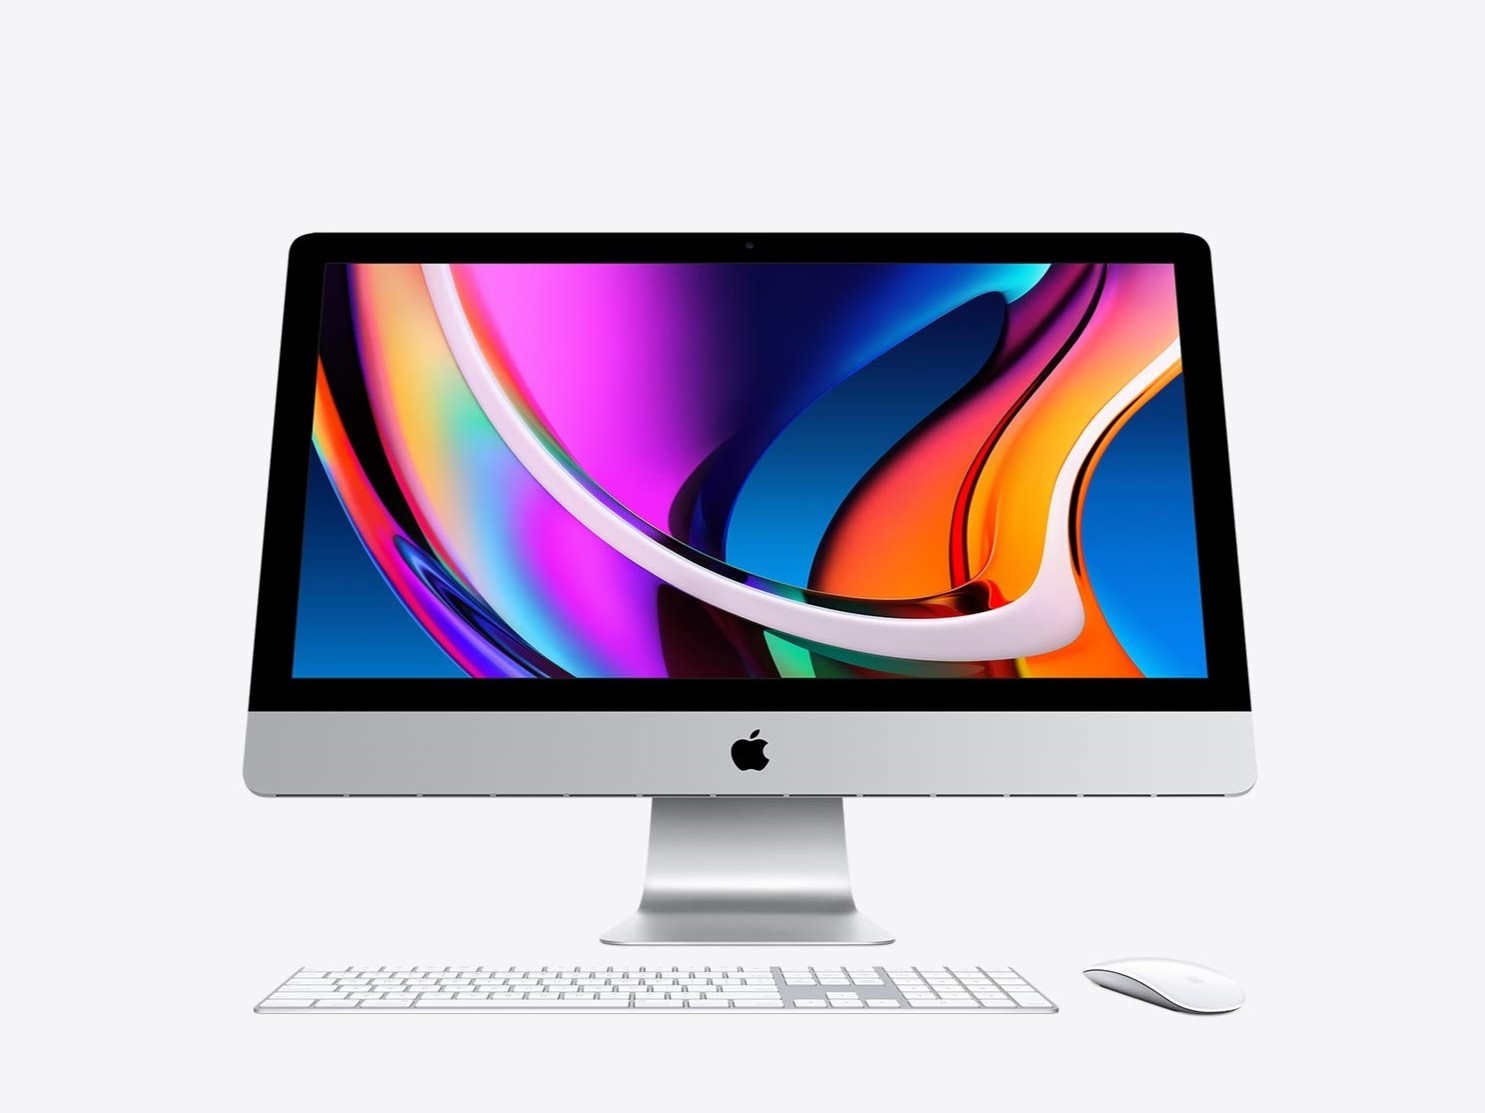 Tela Retina 5K de 27 polegadas do iMac com imagem de produto de teclado e mouse.